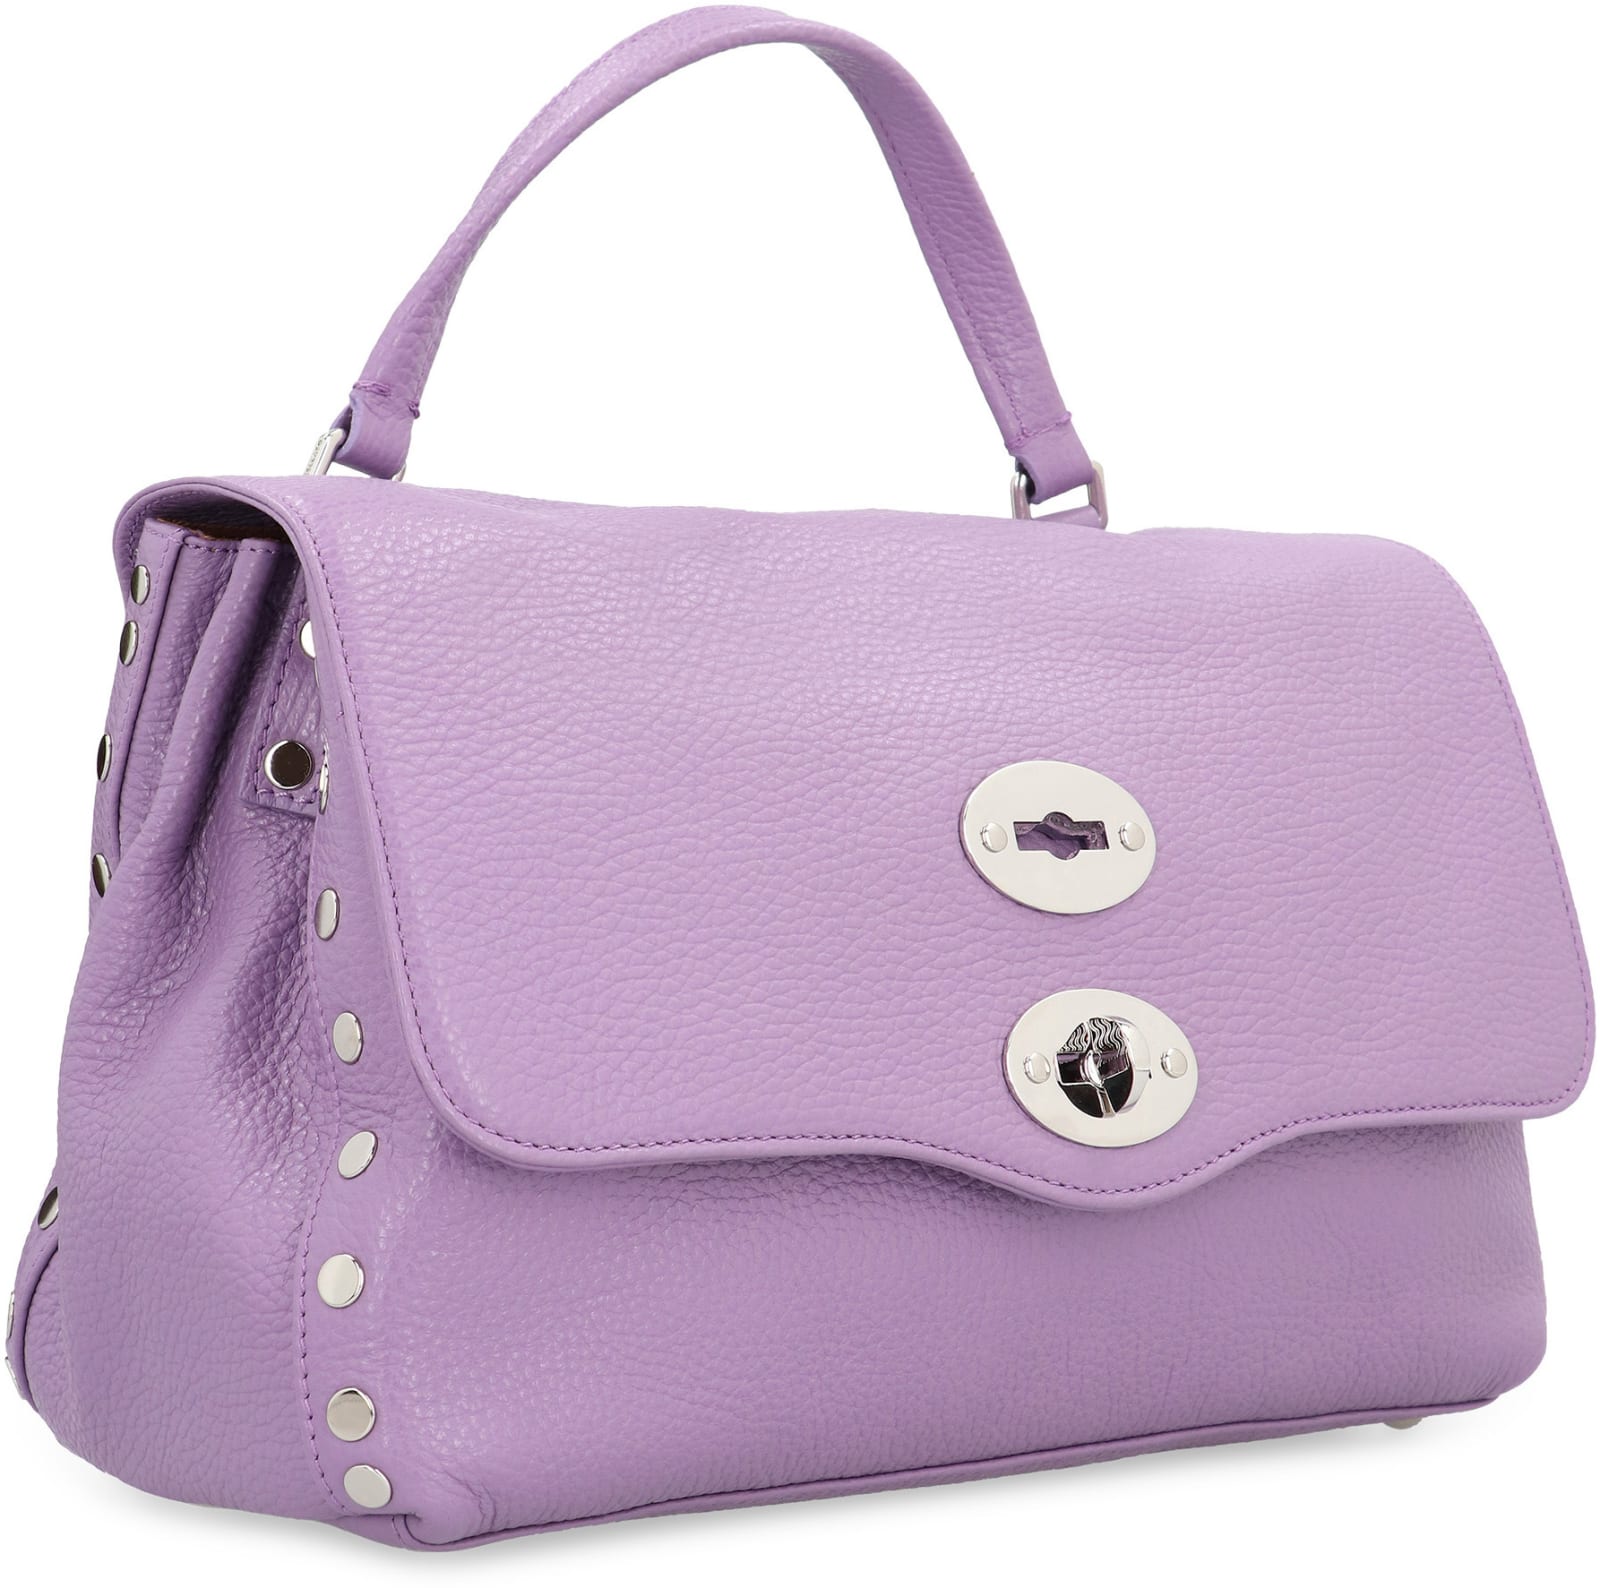 Shop Zanellato Postina S Leather Handbag In Violet Lilla